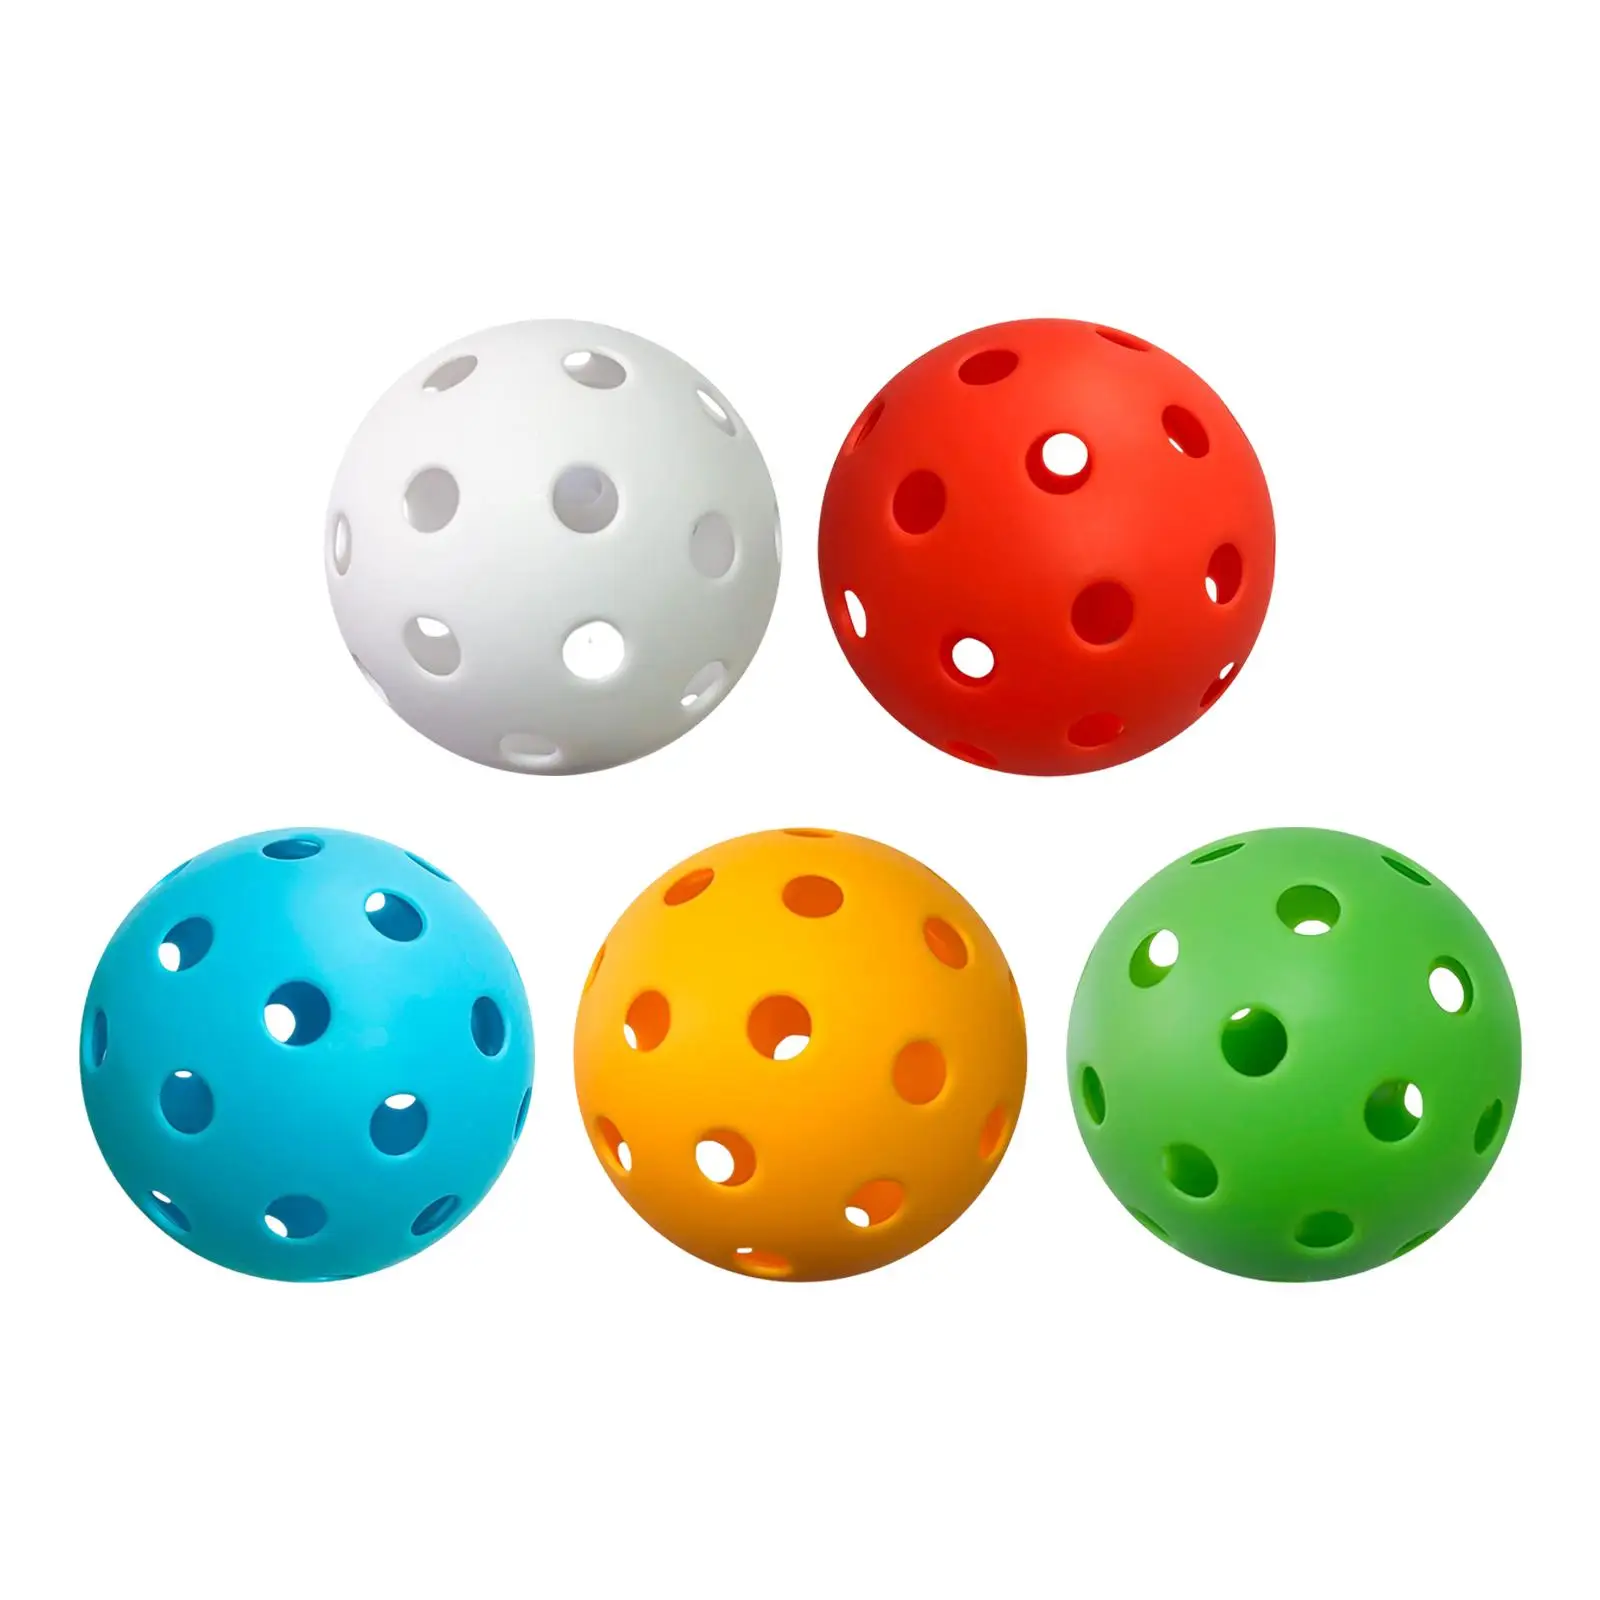 

Прочные шарики для марикабола с 40 отверстиями, воздушный поток, полые стандартные Мячи 87 мм для улицы и помещений, пикаговые мячи для домашнего использования, для детей и начинающих